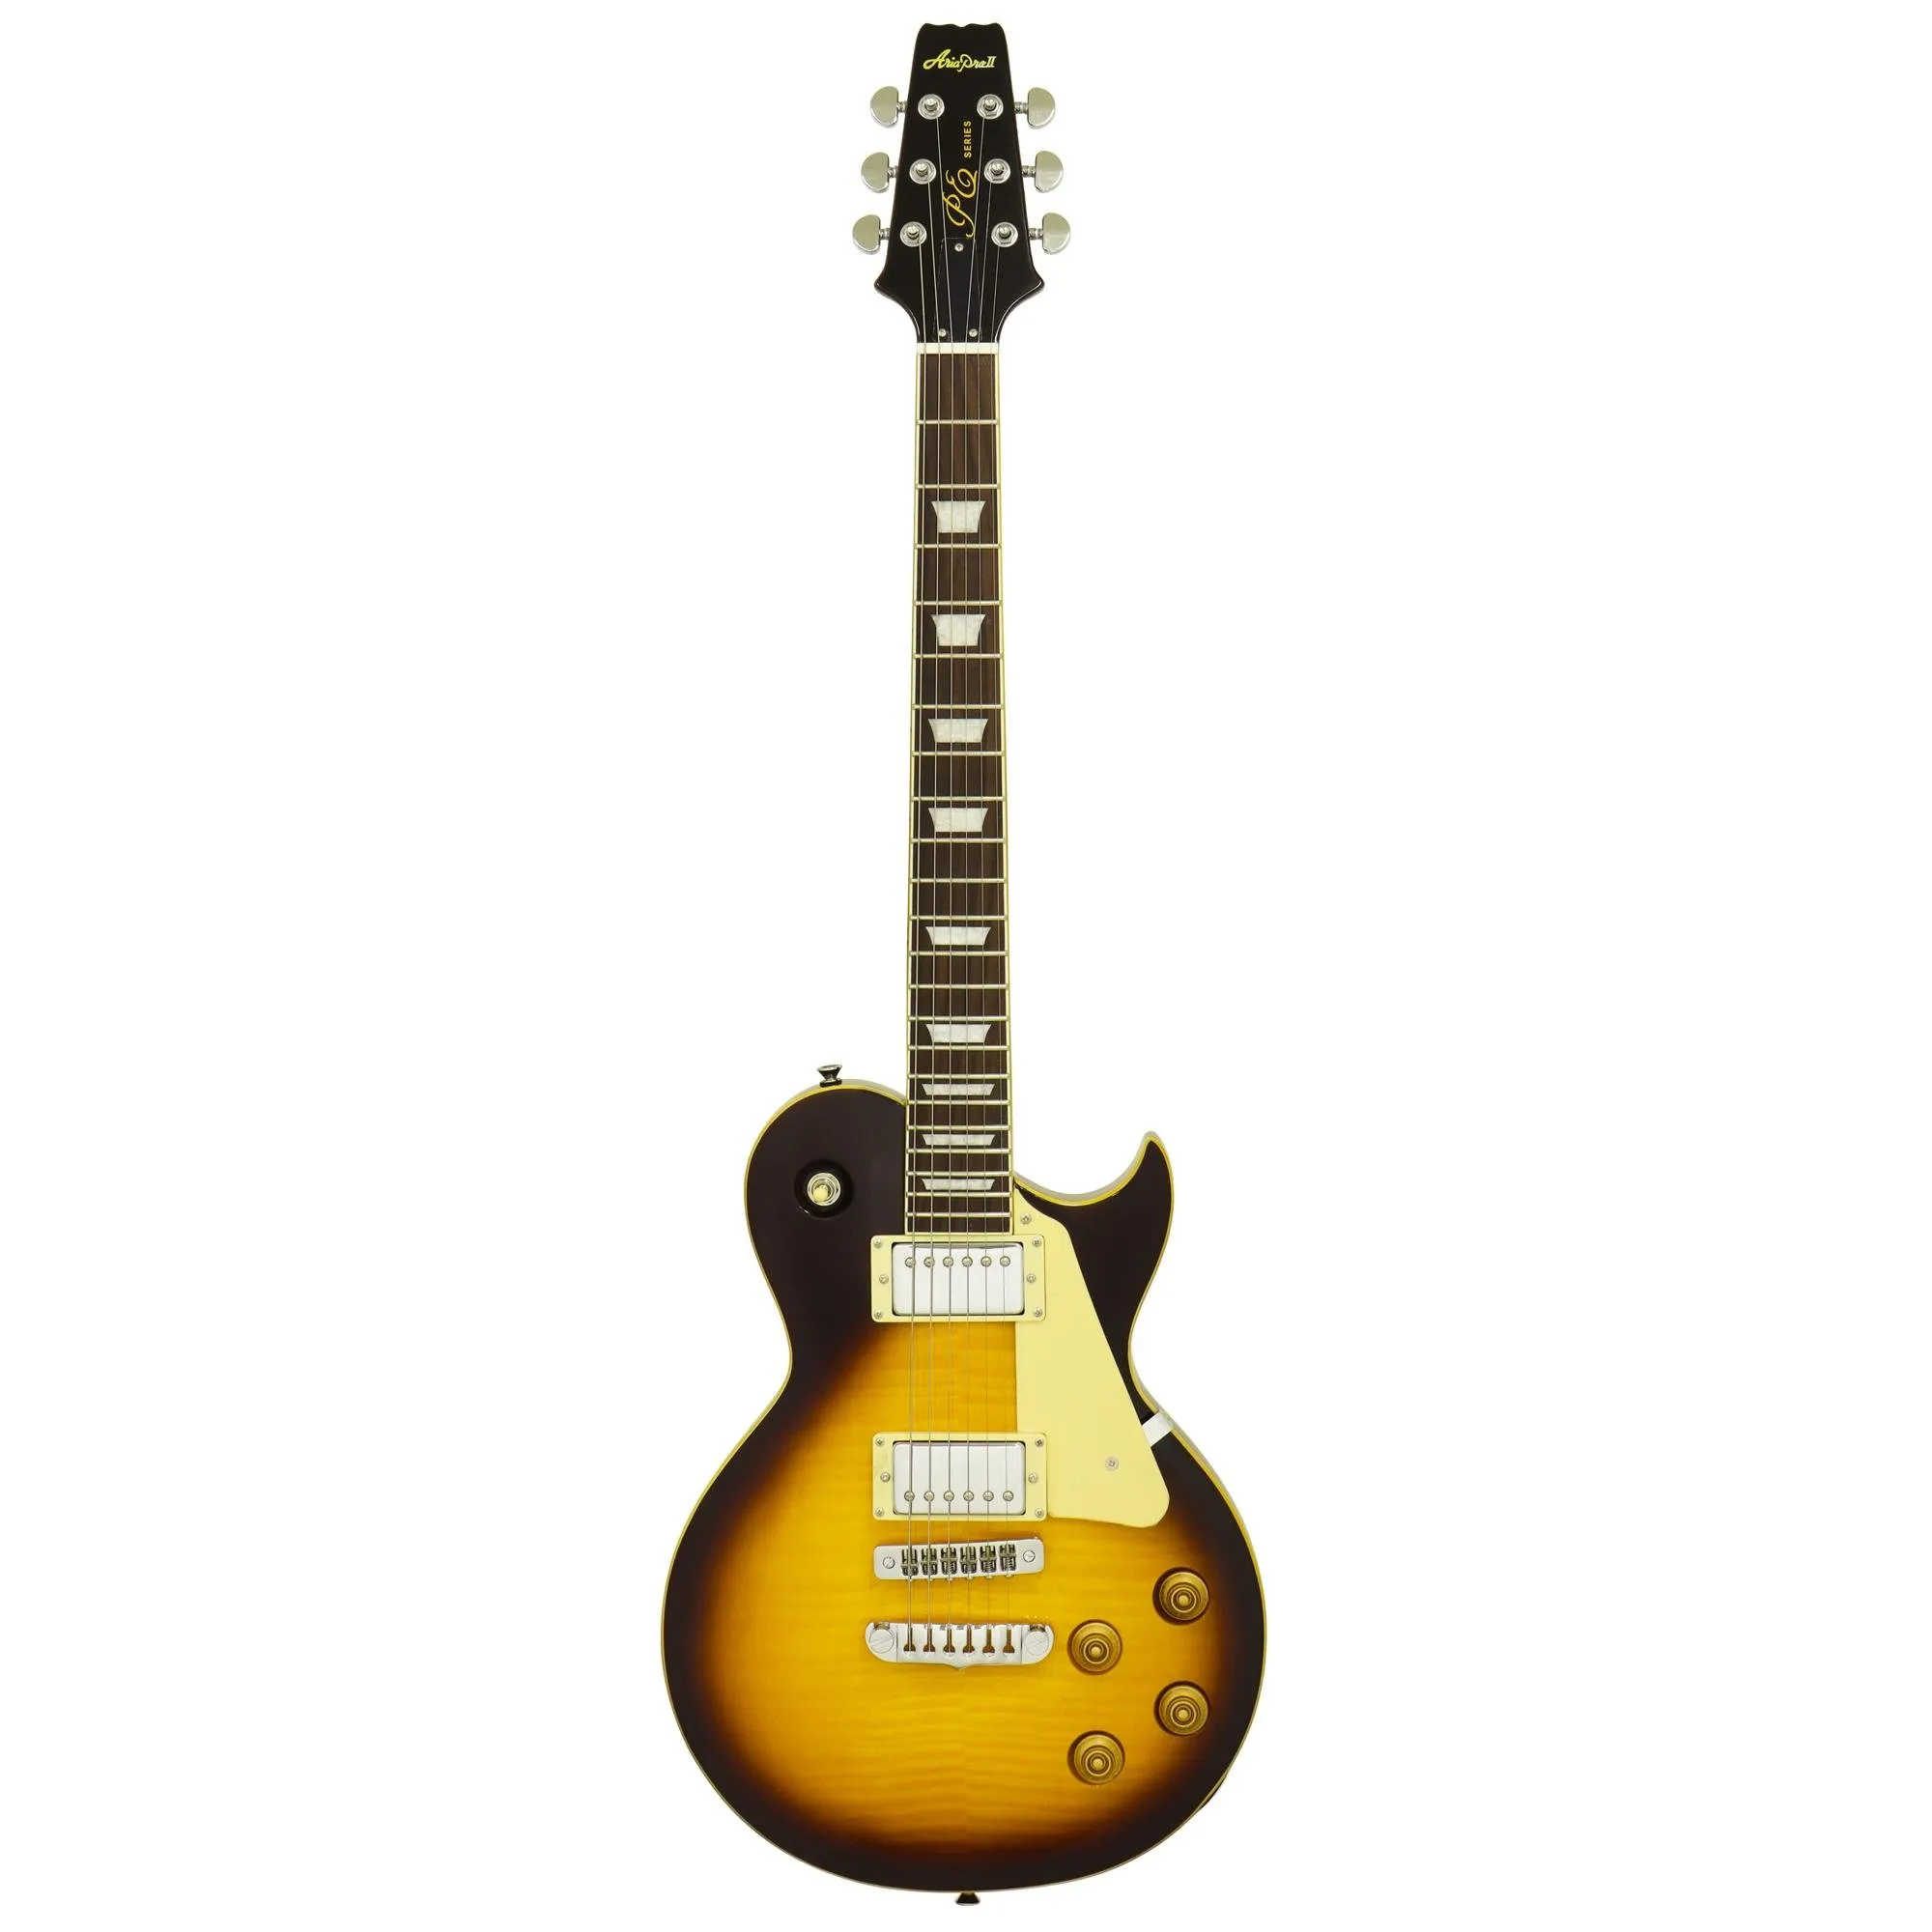 Guitarra Aria Pro II PE-590STD Aged Tobacco Sunburst por 3.011,00 à vista no boleto/pix ou parcele em até 12x sem juros. Compre na loja Mundomax!